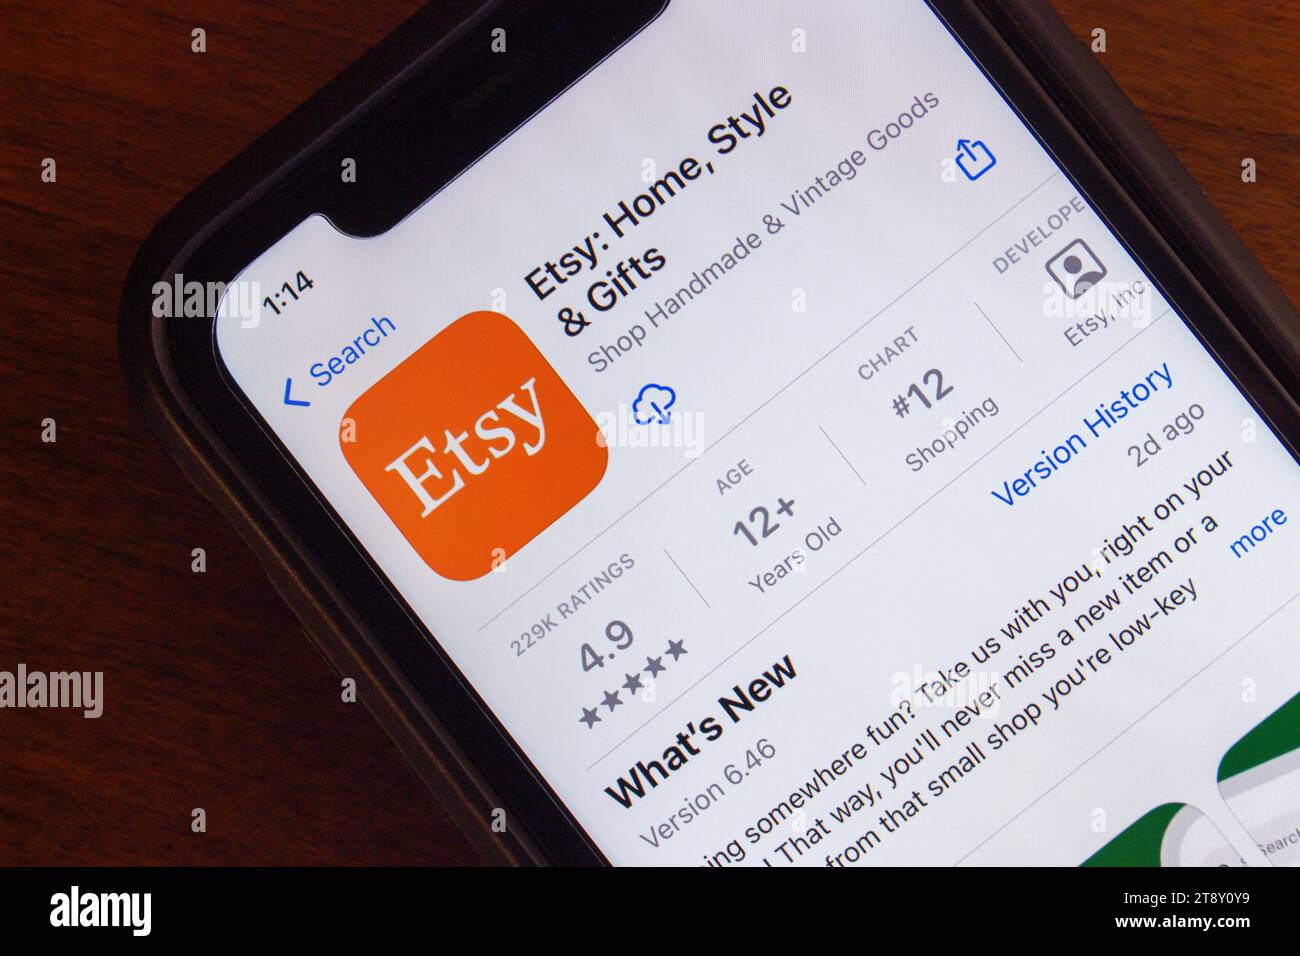 App Etsy visualizzata nell'App Store sullo schermo dell'iPhone. Etsy, Inc. È un'azienda di e-commerce statunitense specializzata in articoli e forniture artigianali fatti a mano o vintage Foto Stock